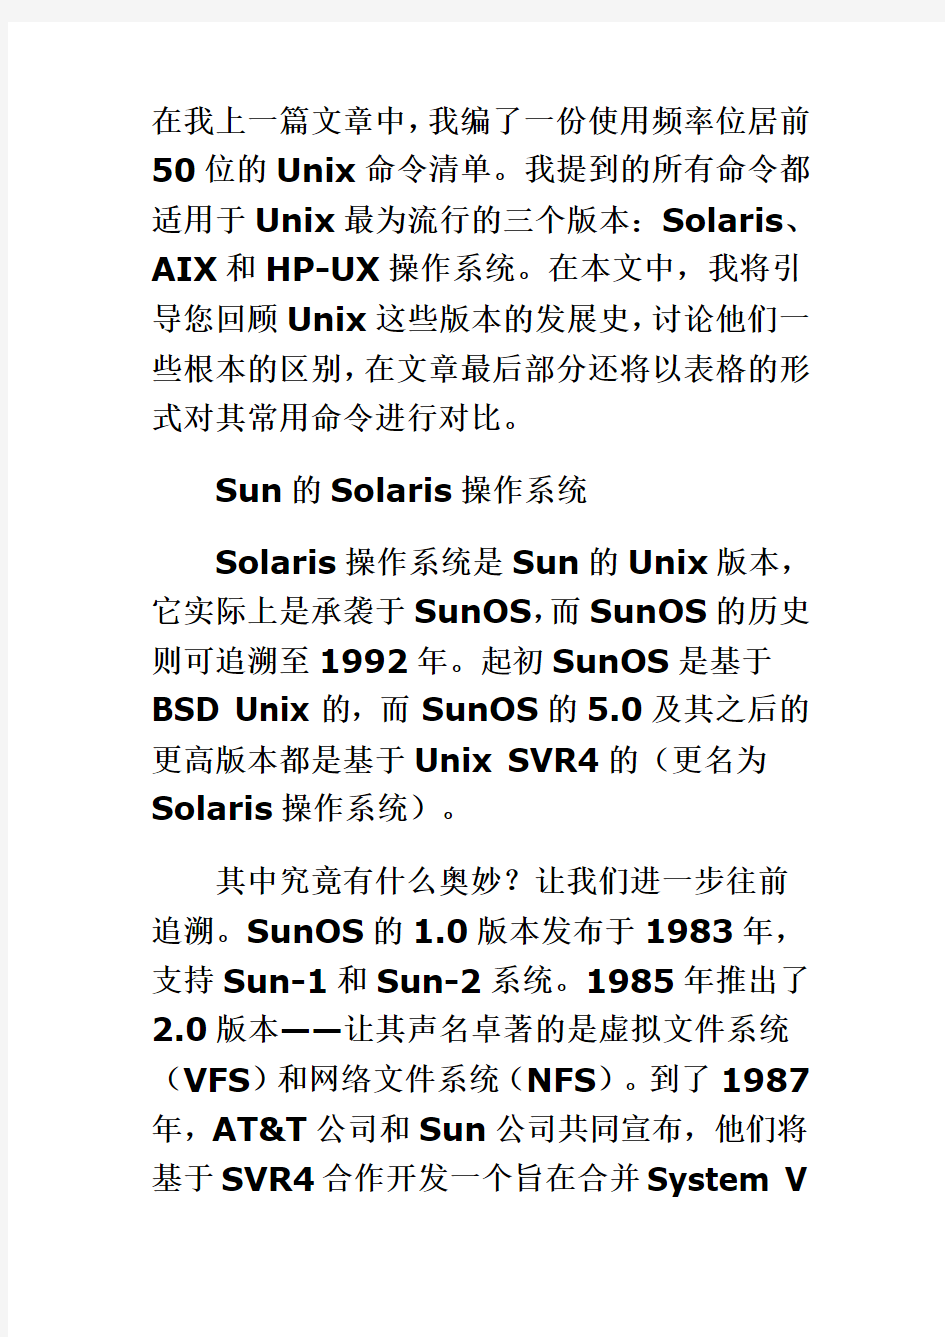 比较Unix操作系统的各个版本：AIX、HP-UX和Solaris